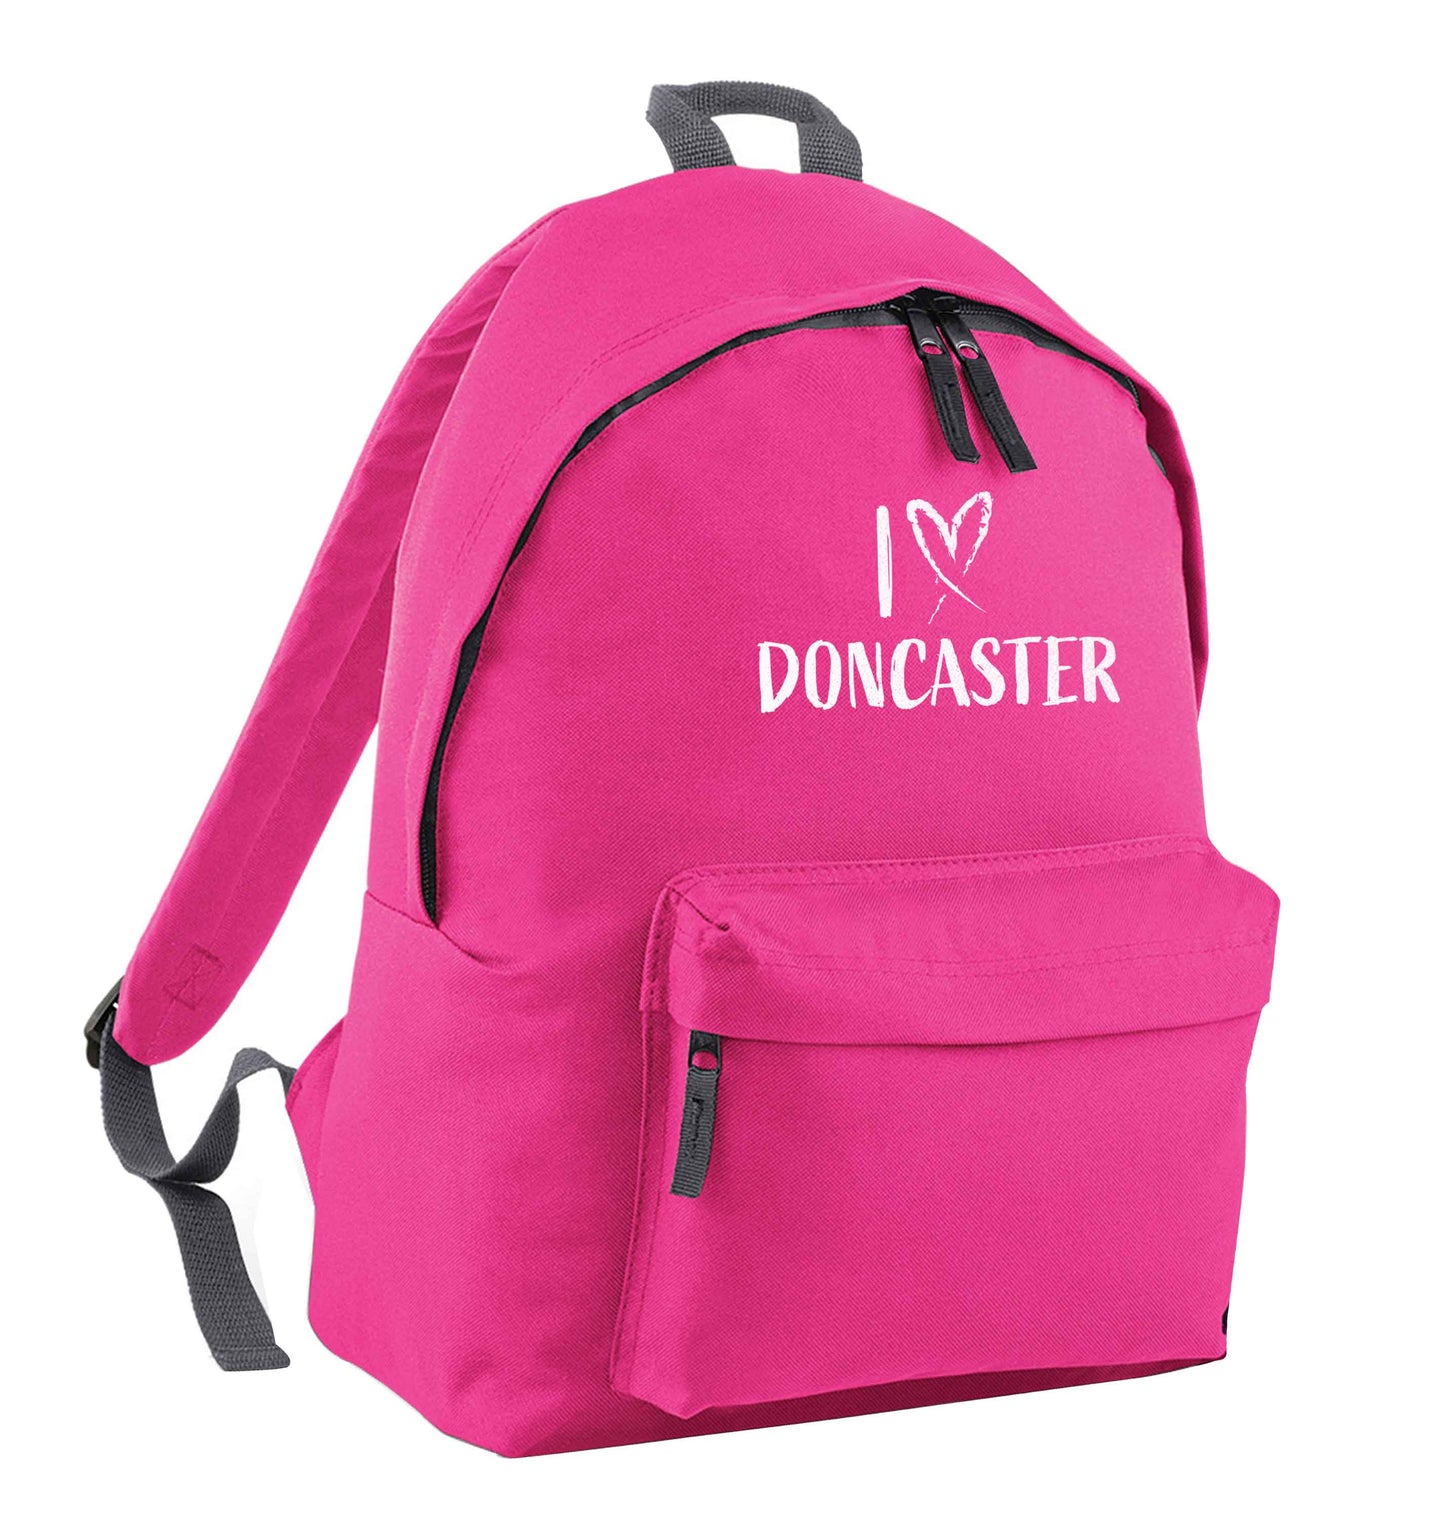 I love Doncaster pink children's backpack